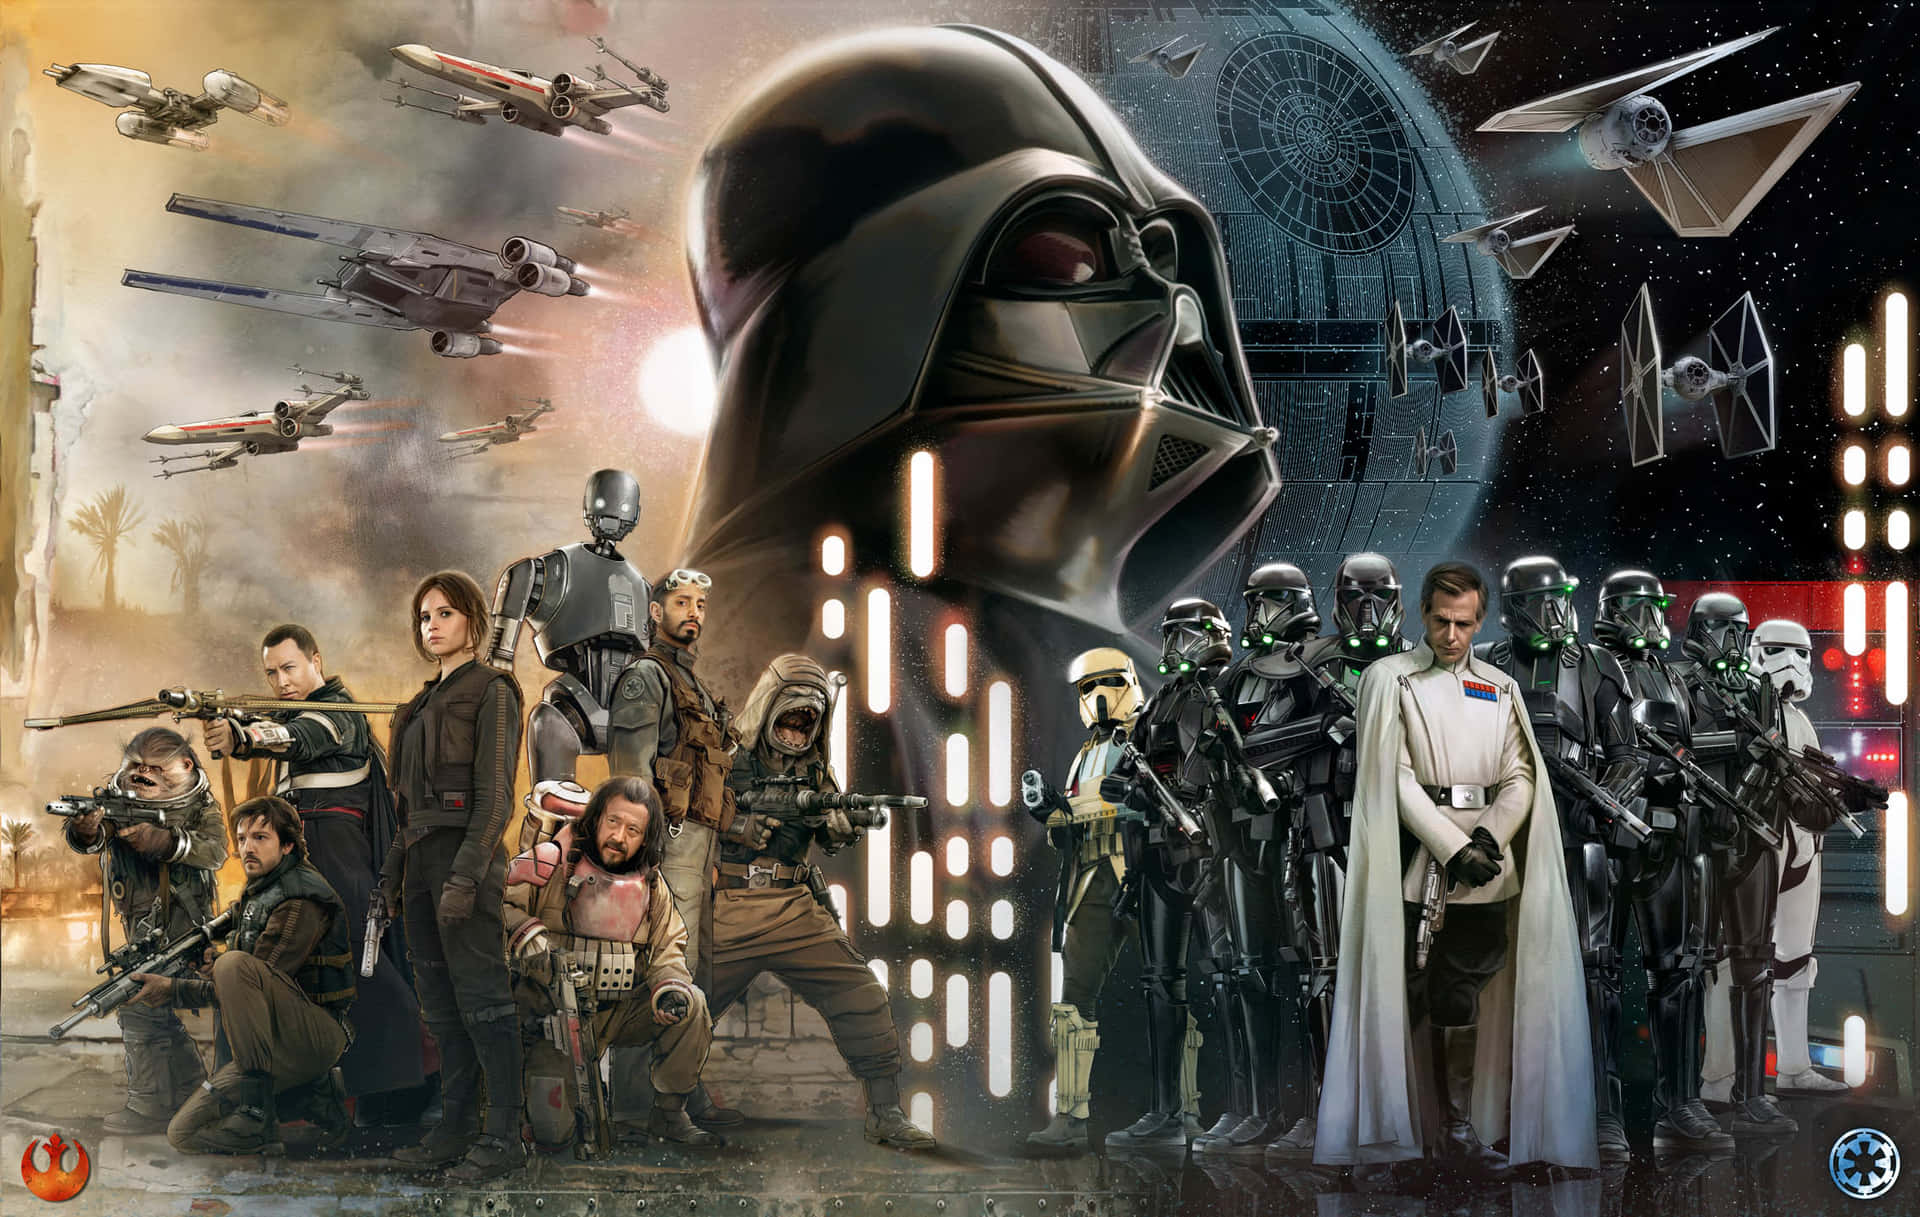 Bildvon Luke Skywalker Und Den Star Wars Charakteren. Wallpaper